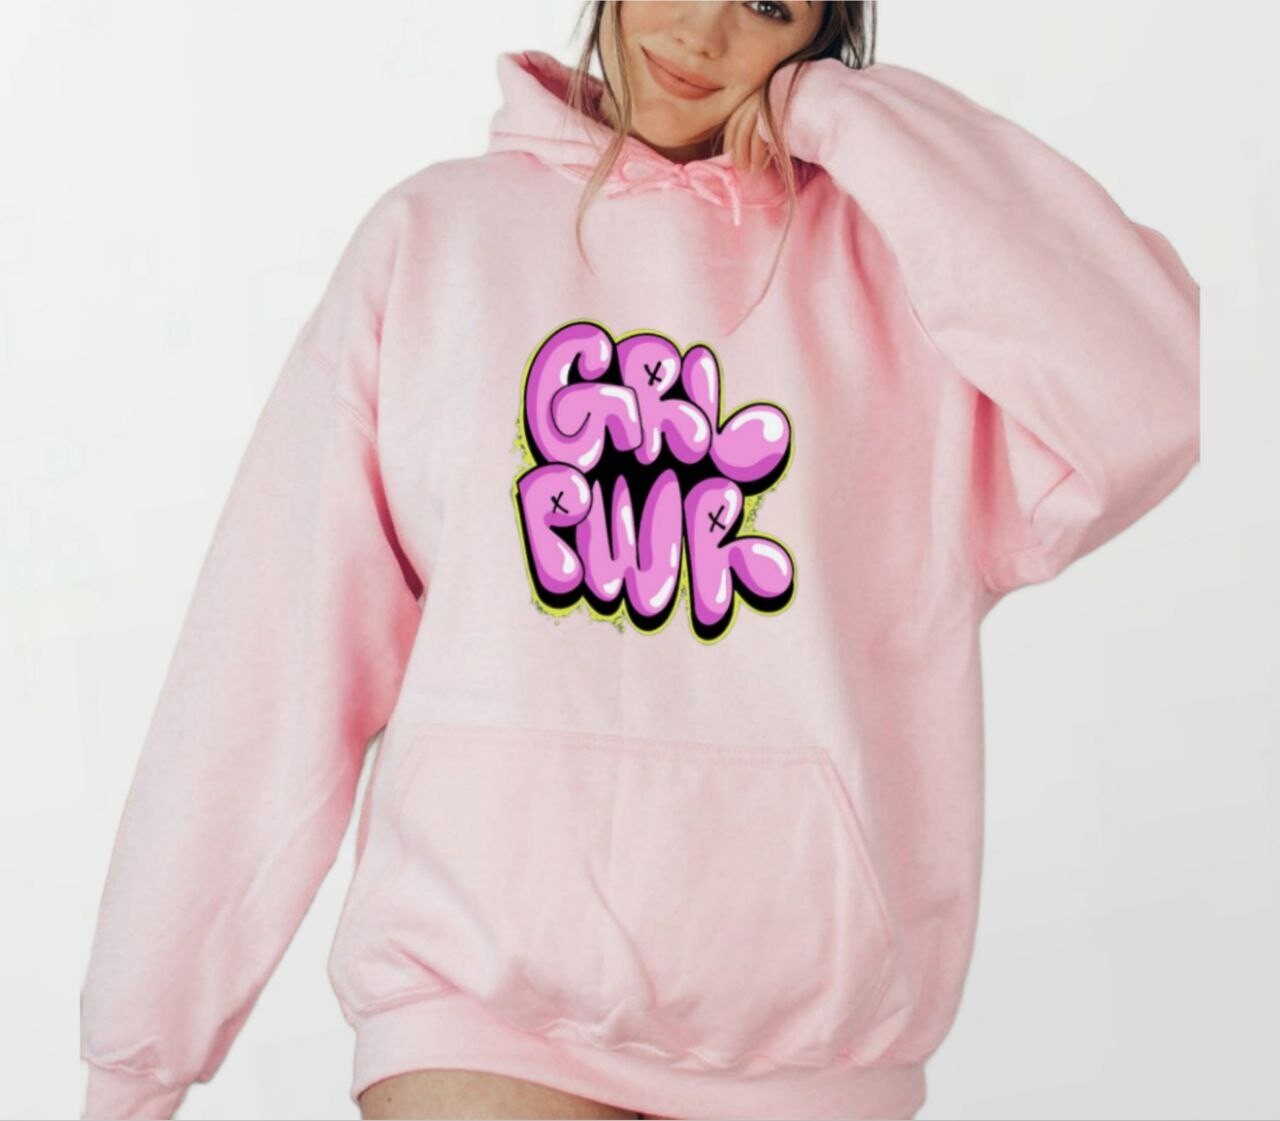 Grl pwr_Women's Elite Hoodie pink